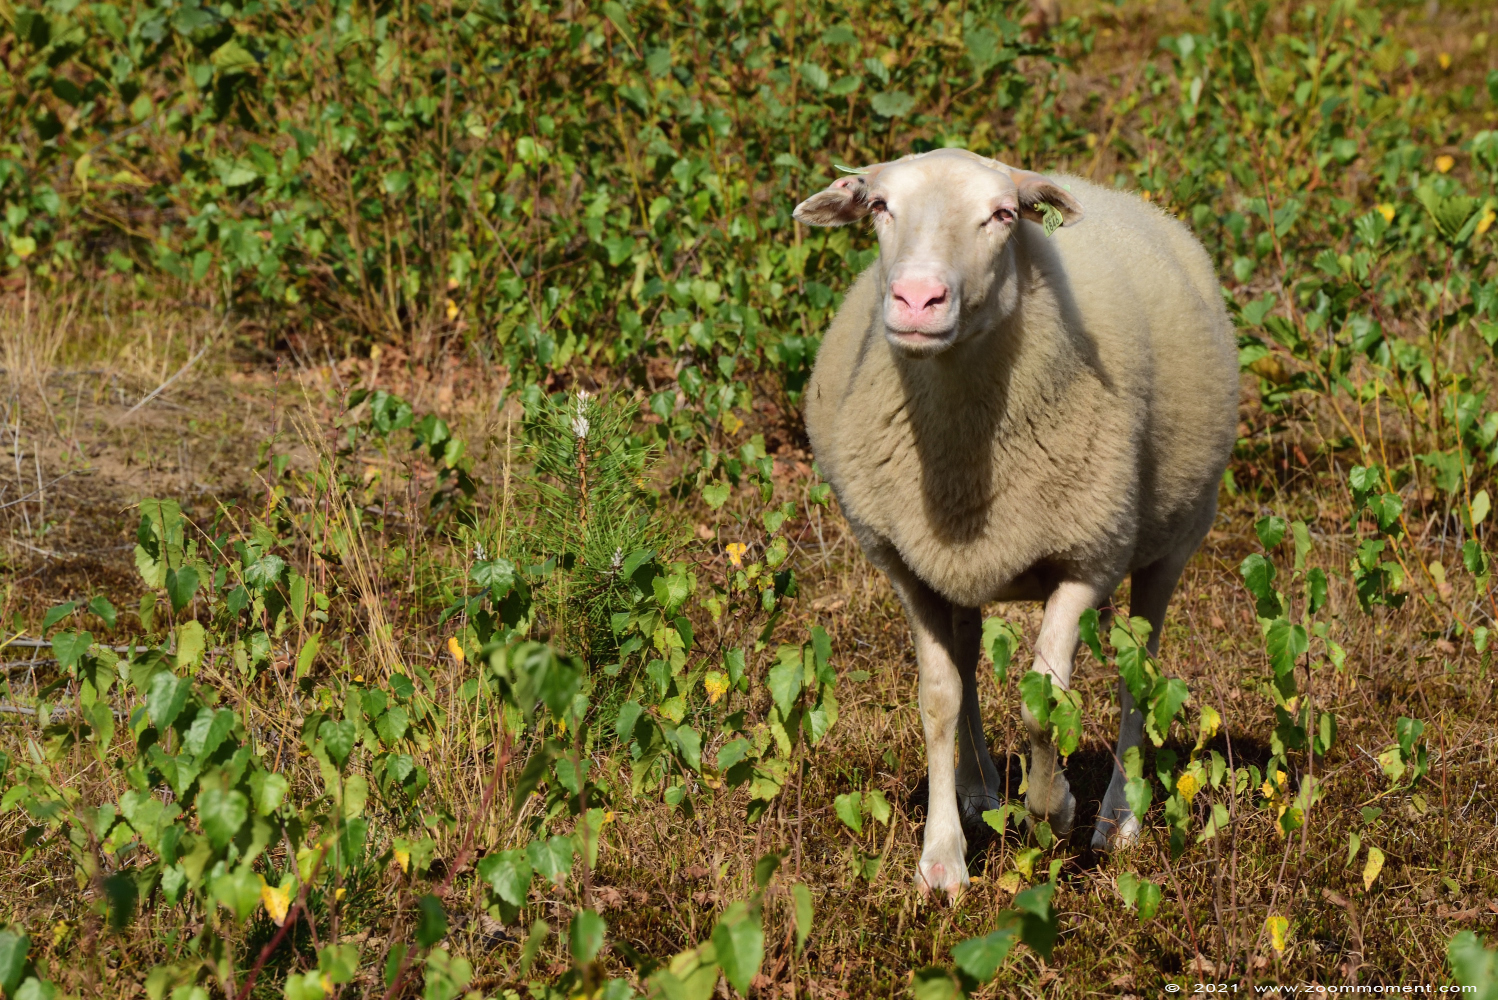 schaap sheep
Keywords: Eksterheide schaap sheep